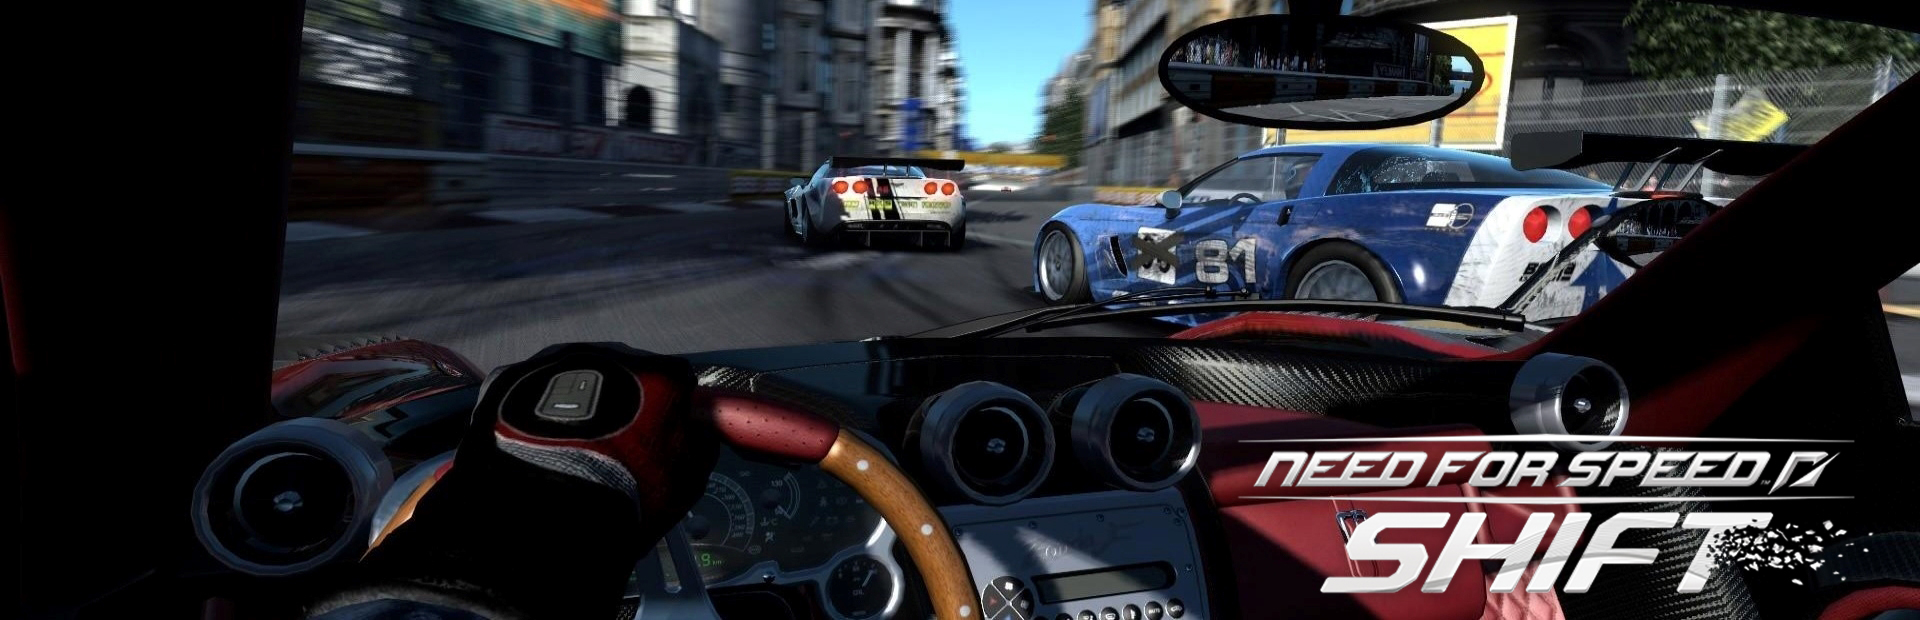 دانلود بازی Need For Speed Shift برای پی سی | گیمباتو